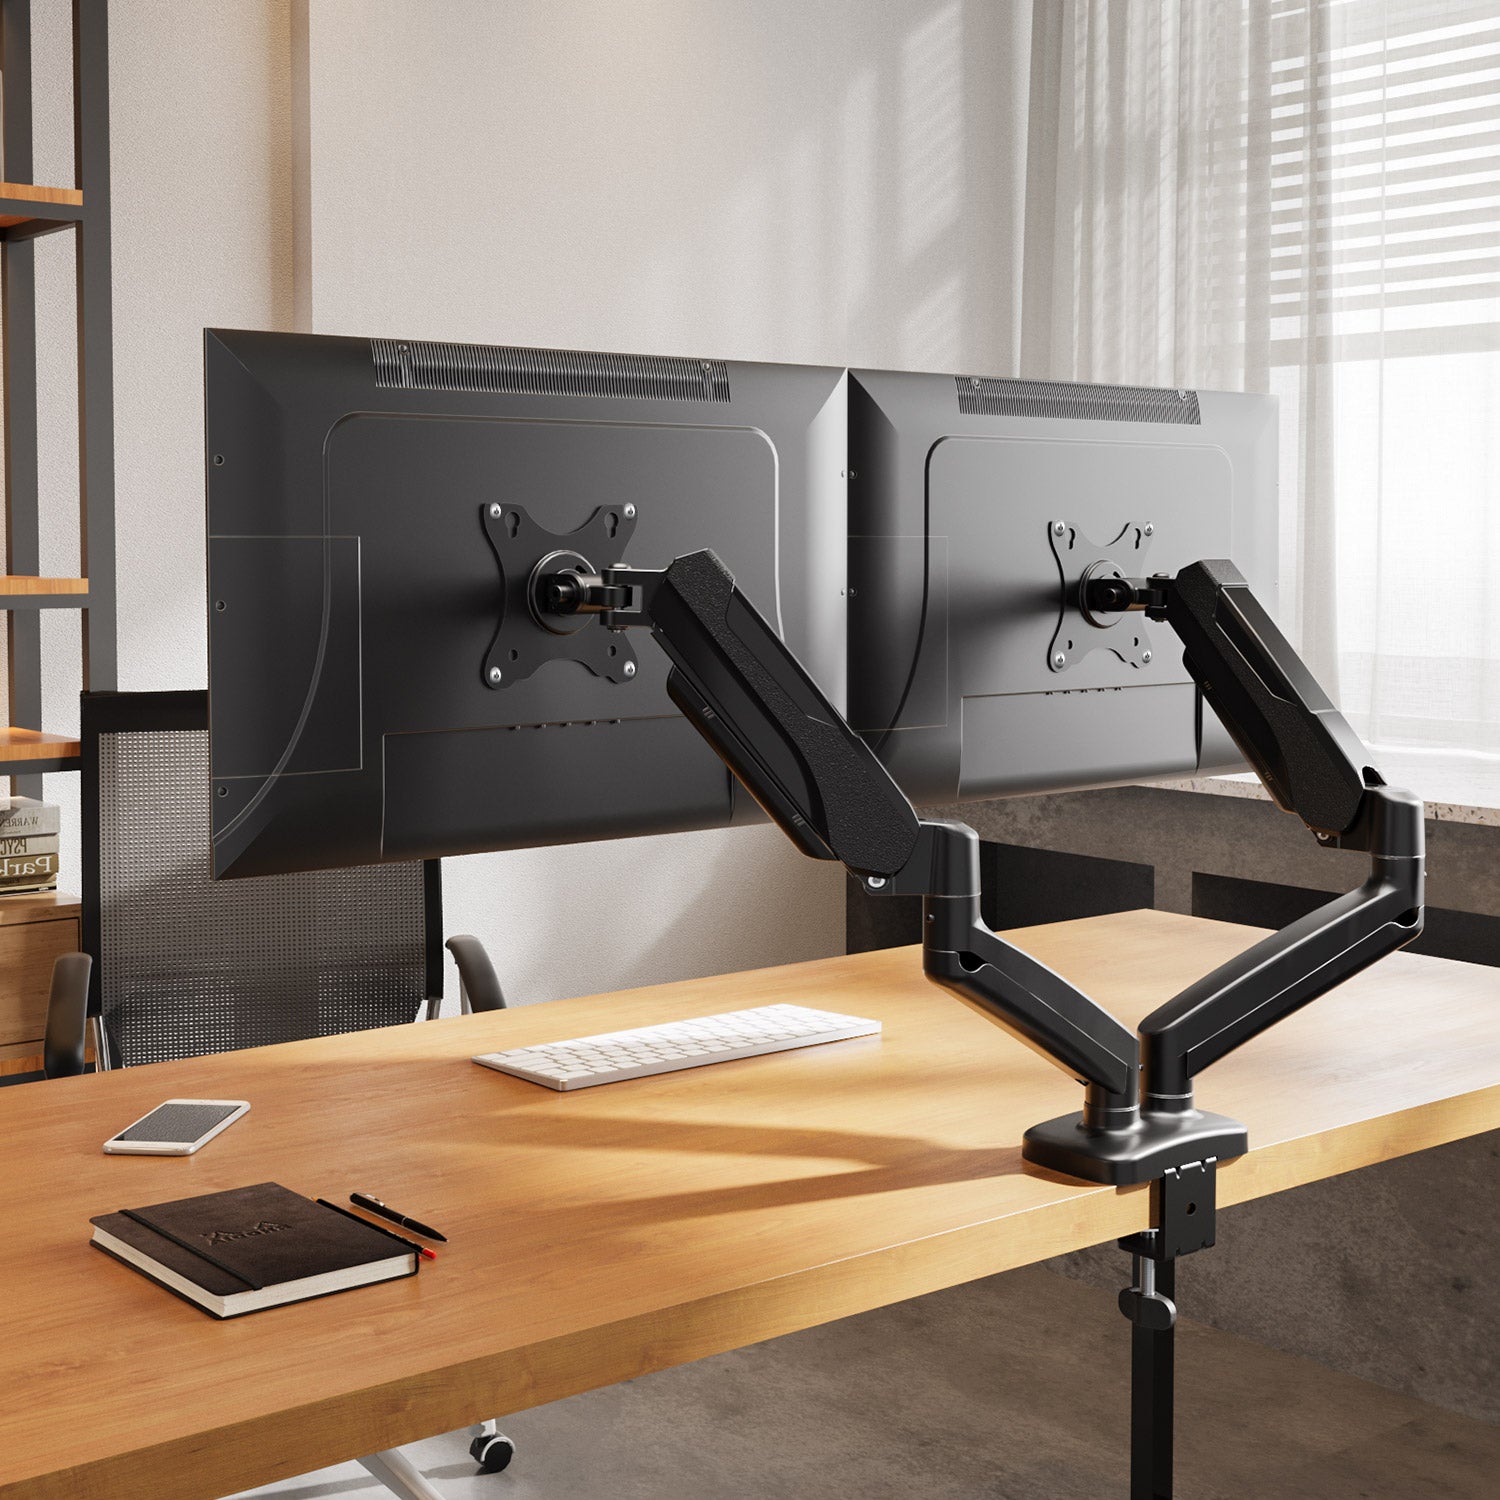 Desk Mount Dual Monitor Arm - Desk Clamp VESA Compatible Monitor